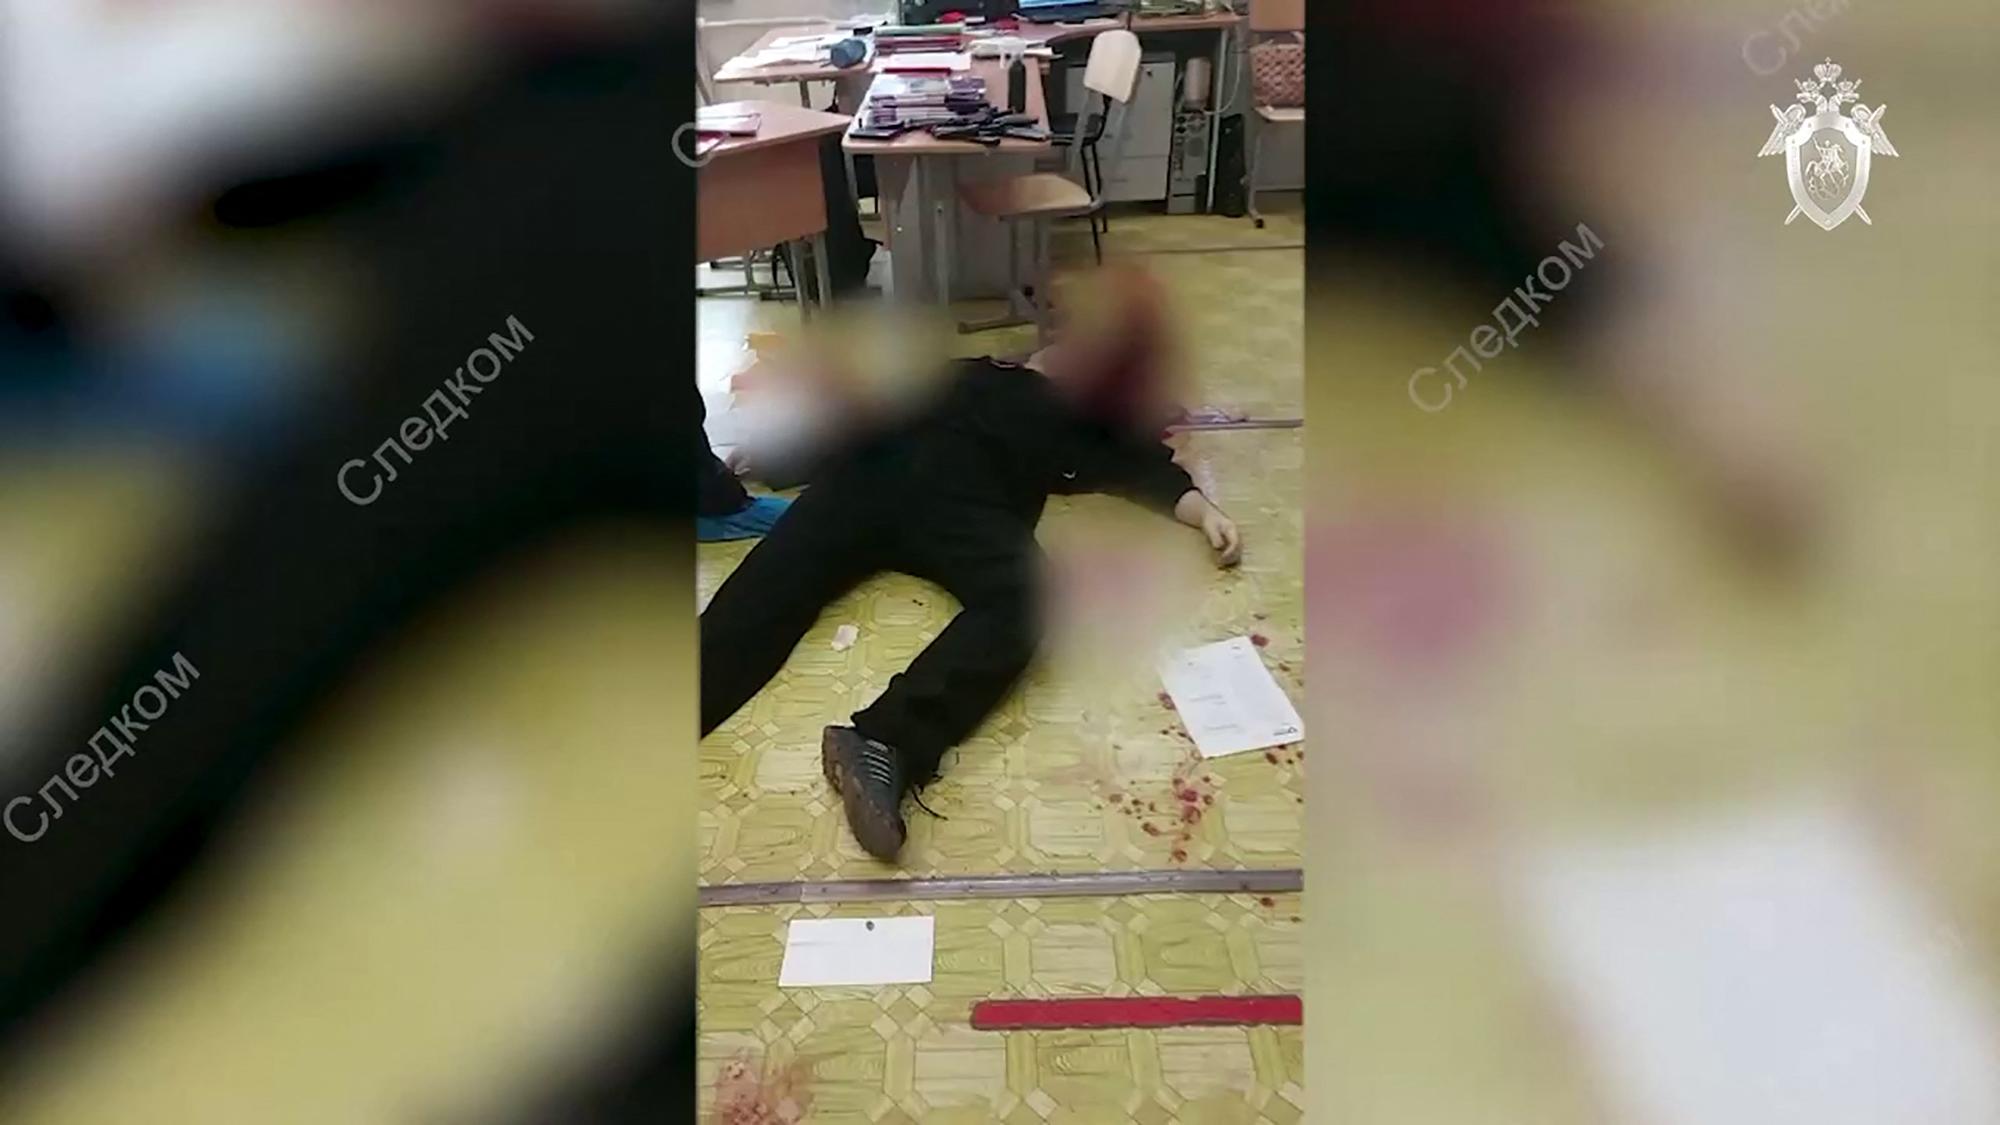 El atacante se quitó la vida tras matar a 15 personas en una escuela.